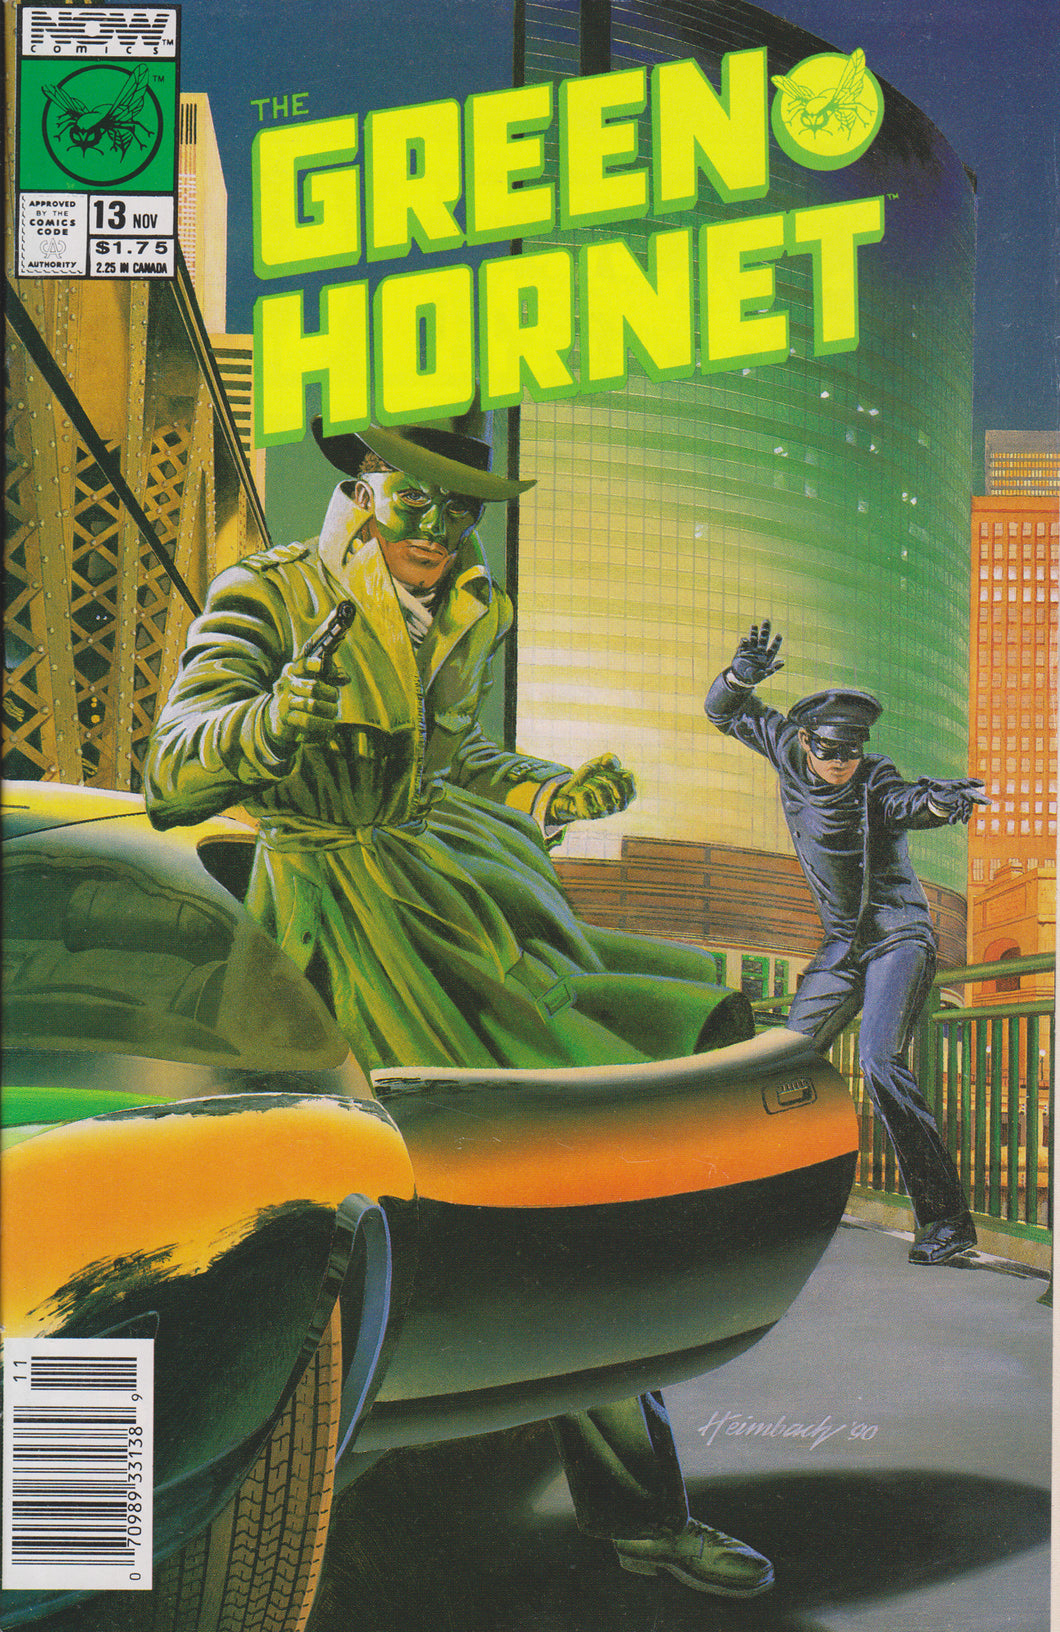 GREEN HORNET #13 COMIC BOOK ~ Now Comics